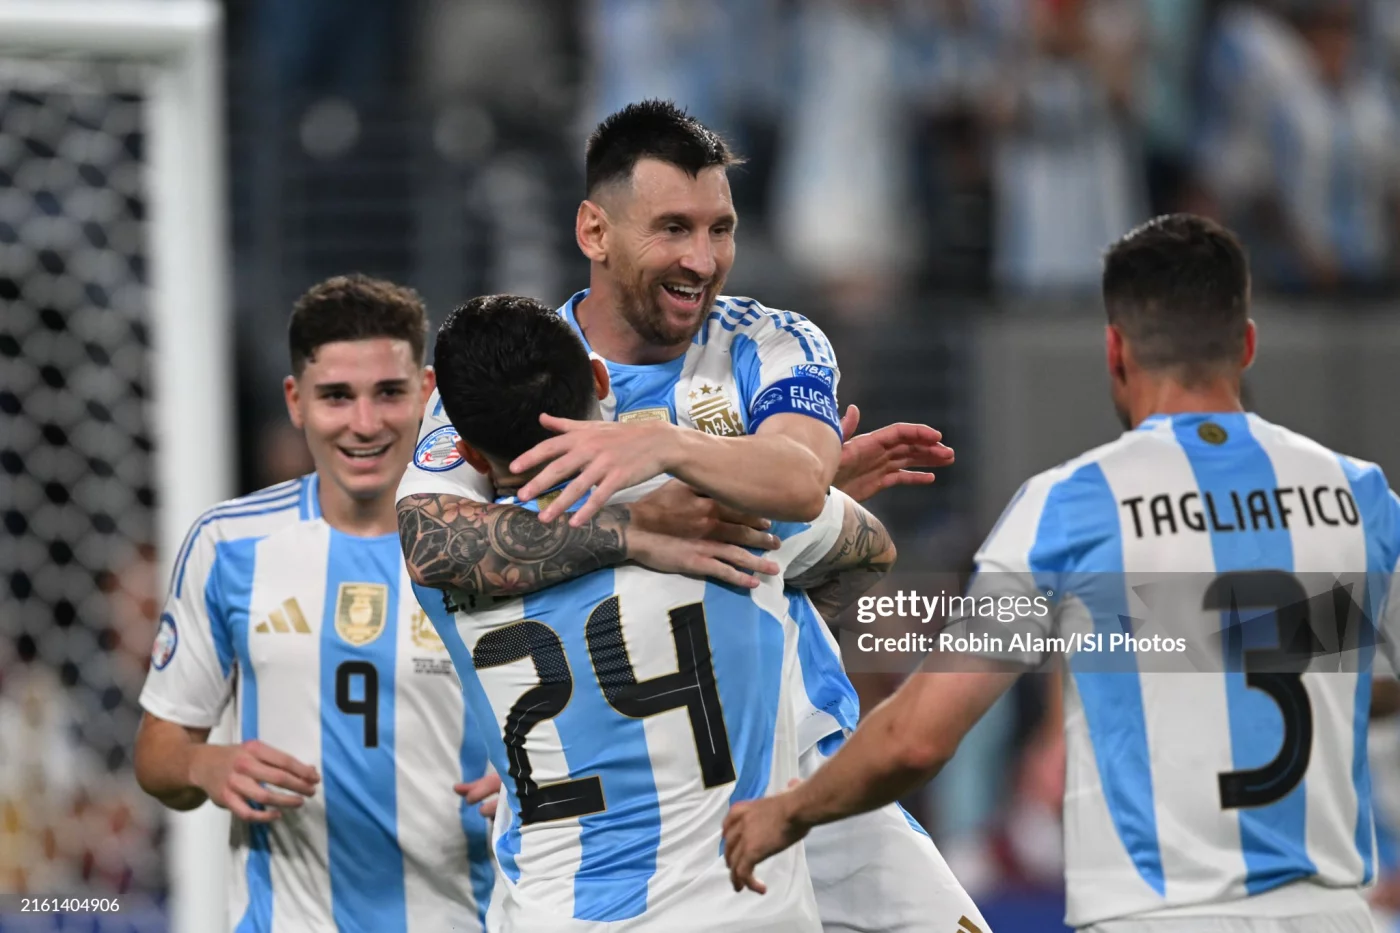 Kopa Amerika. Argentina finalda Kolumbiyani mag‘lub etib bosh sovrinni qo‘lga kiritdi расм